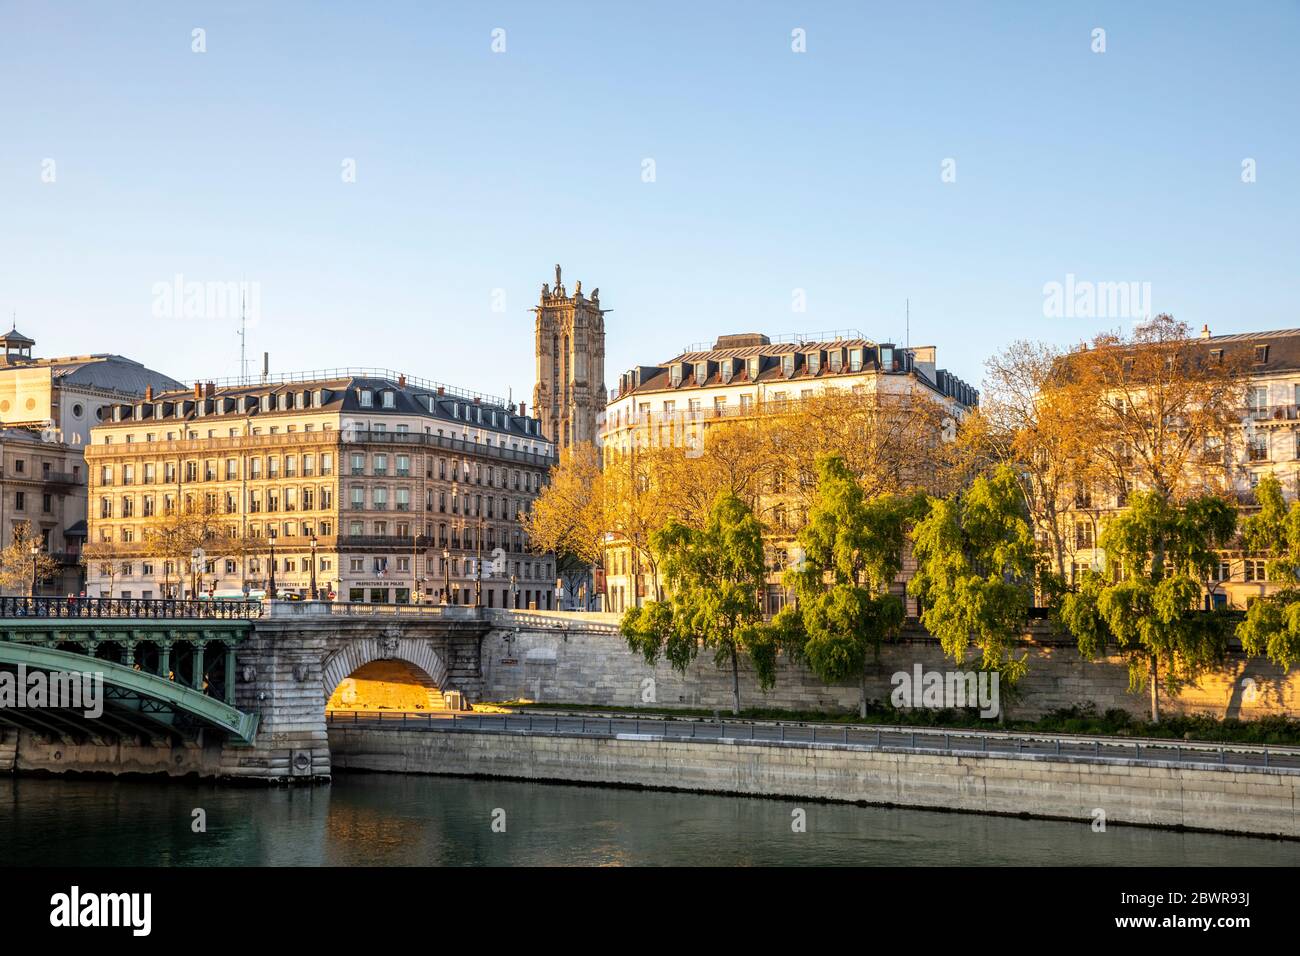 París, Francia - 4 de abril de 2020: 19 día de contención debido a Covid-19. Edificios Haussmann y la torre de Saint Jacques en el fondo en París Foto de stock